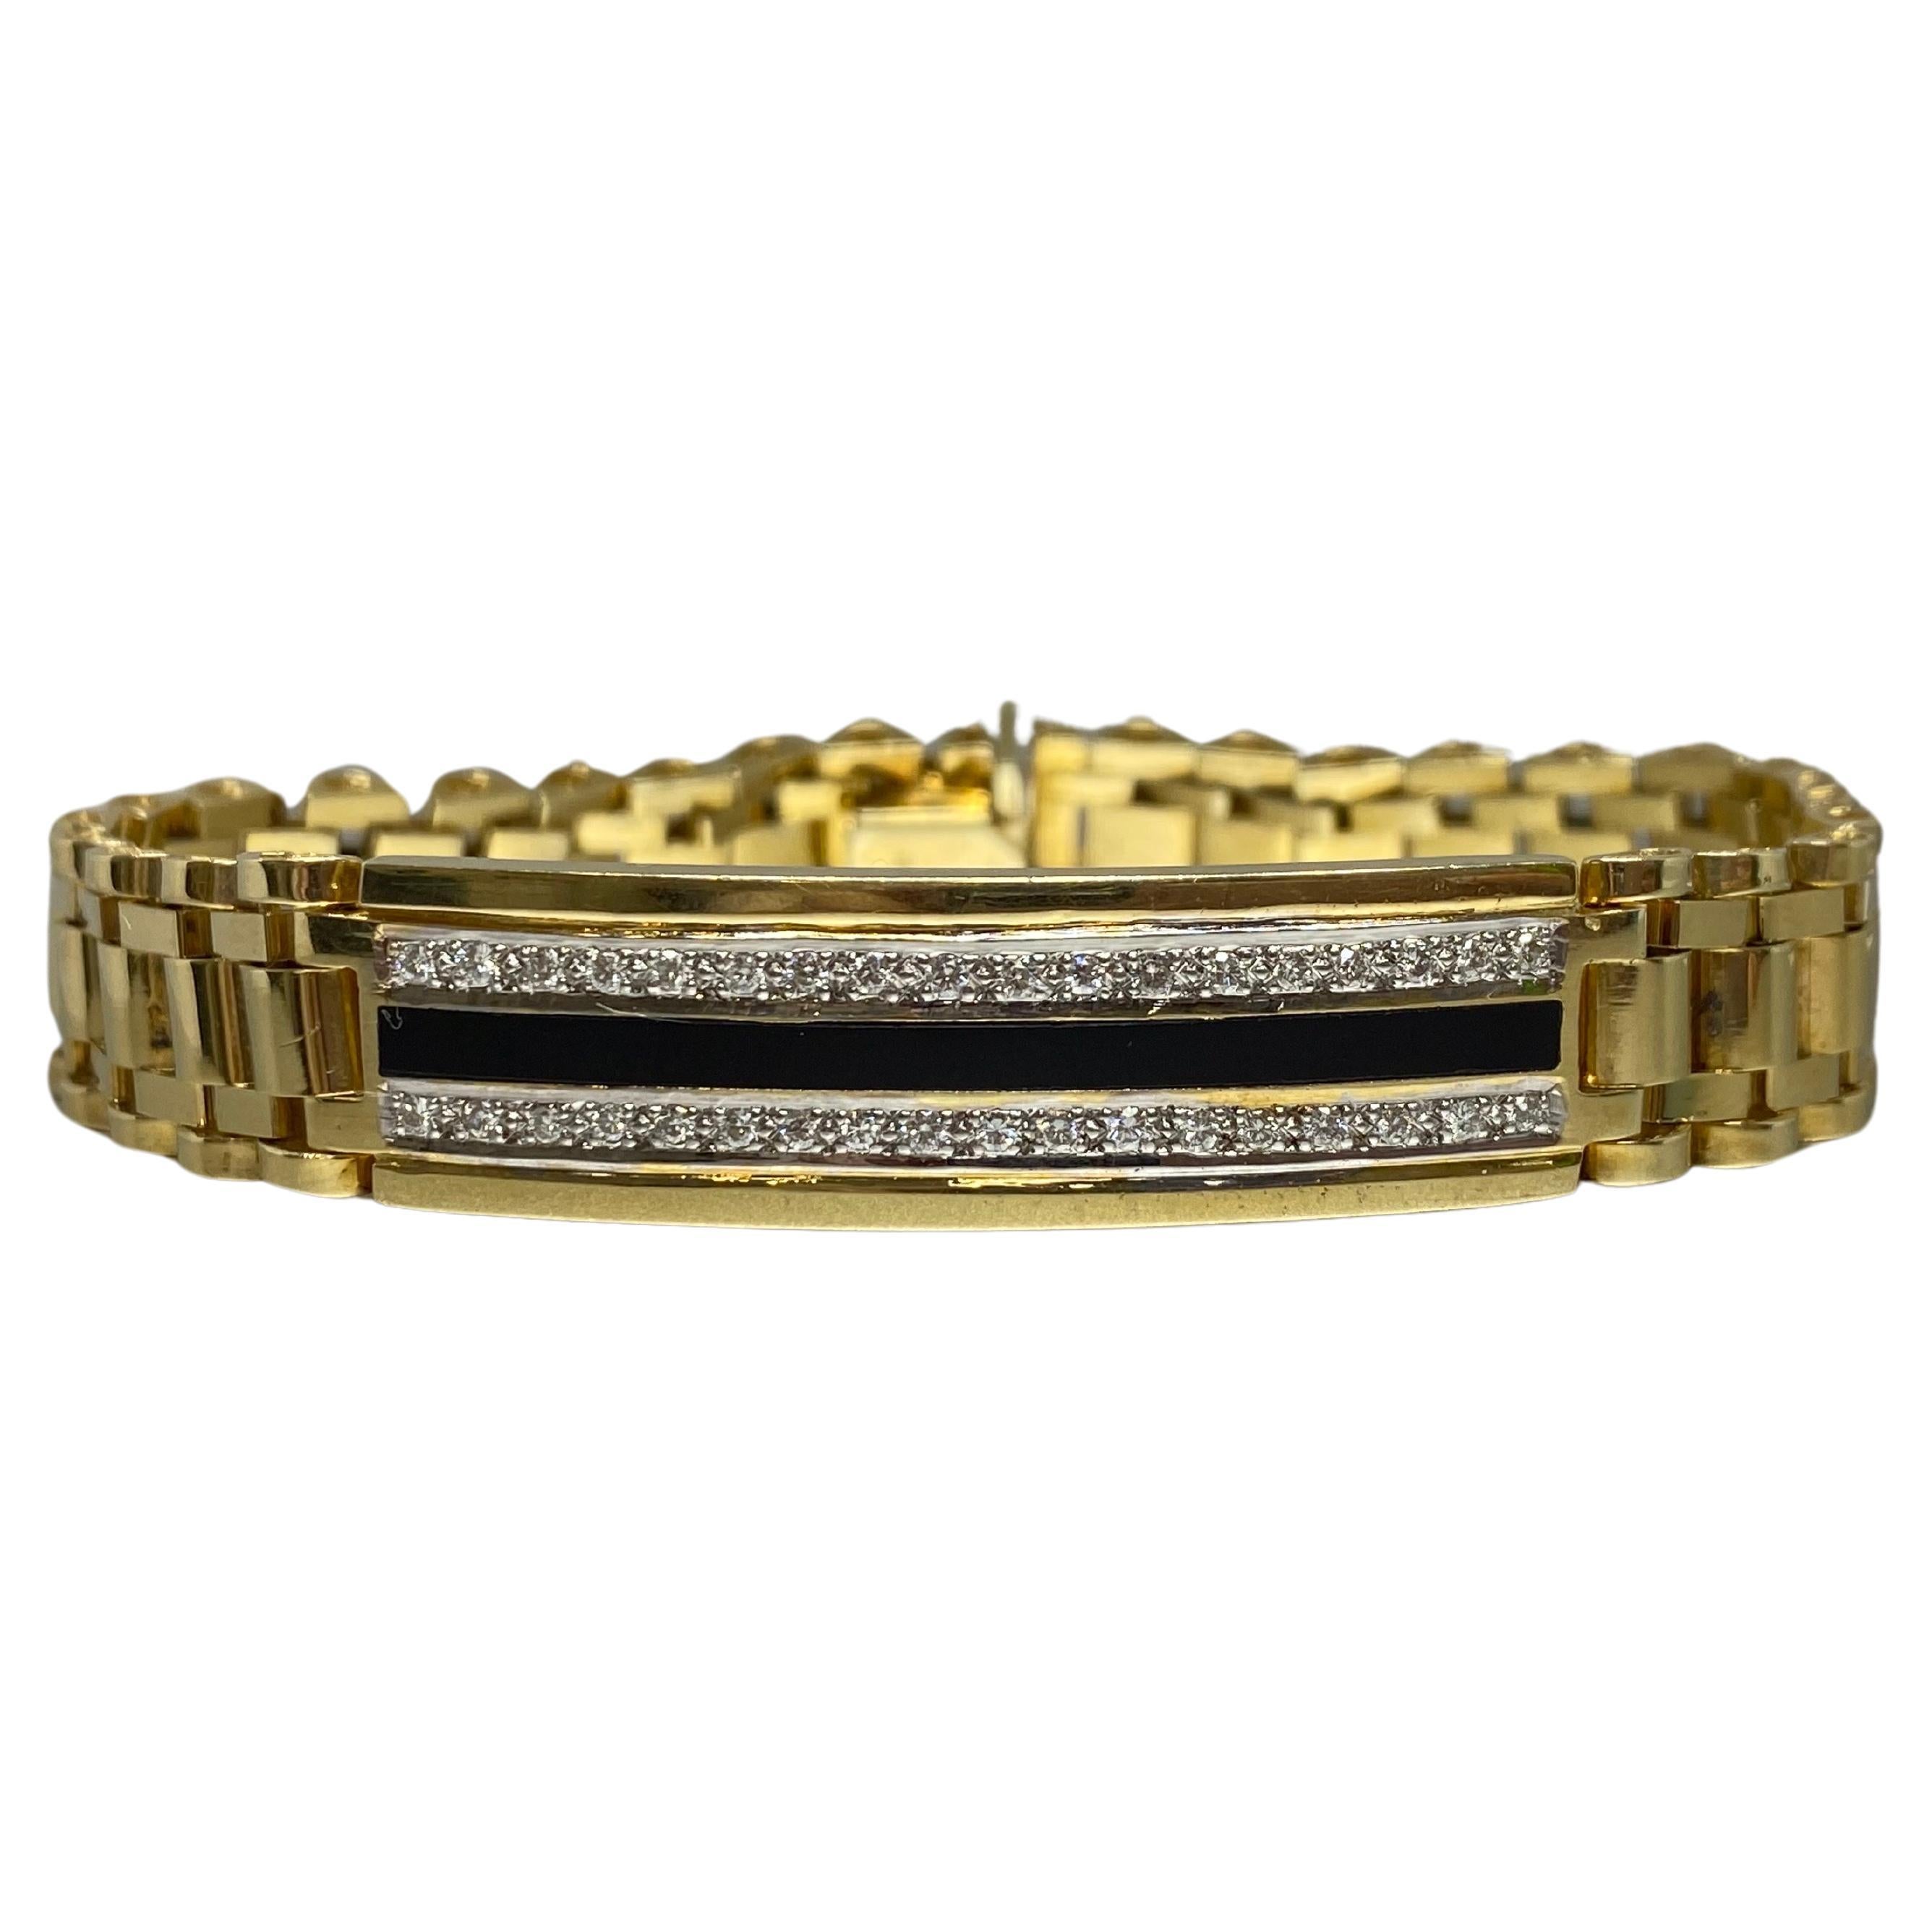 Ce bracelet pour homme ou unisexe attire l'attention. Il est fabriqué en or jaune 14 carats et présente une bande au design jubilaire très apprécié, avec une finition polie. L'avant du bracelet présente une longue barre incurvée ornée d'une rangée